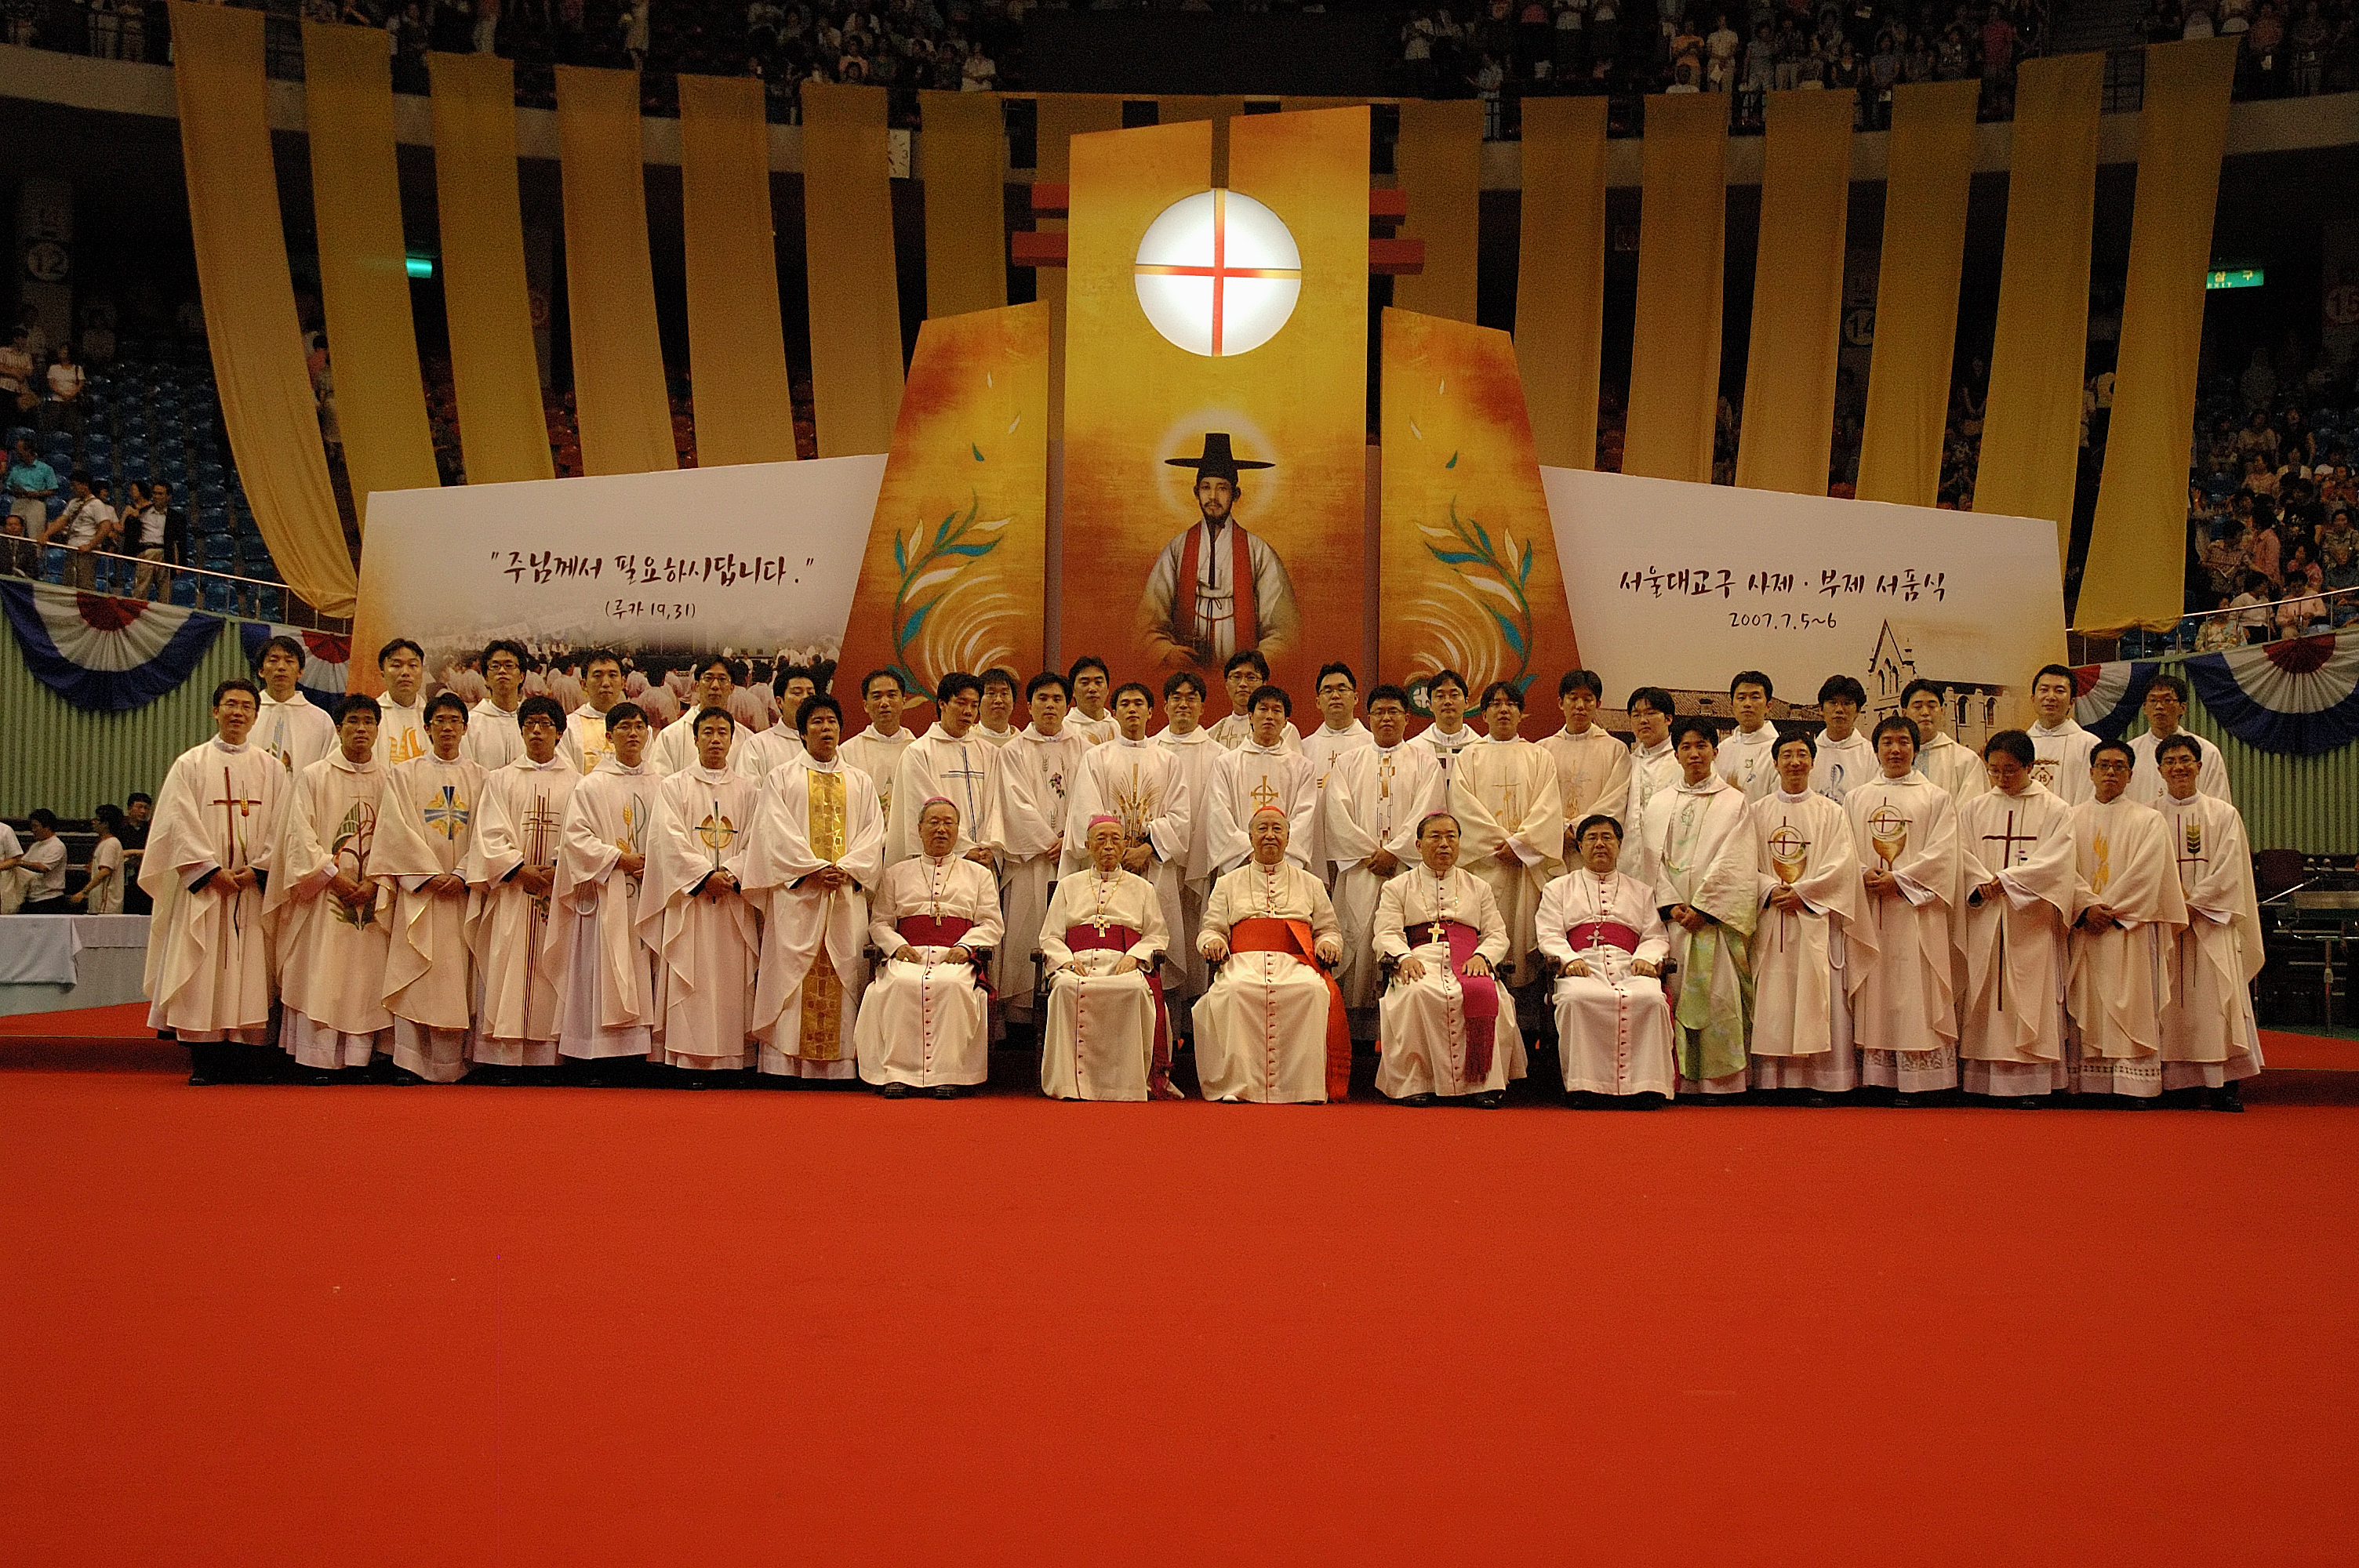 서울대교구 서품식(2007.7.6)의 관련된 이미지 입니다.